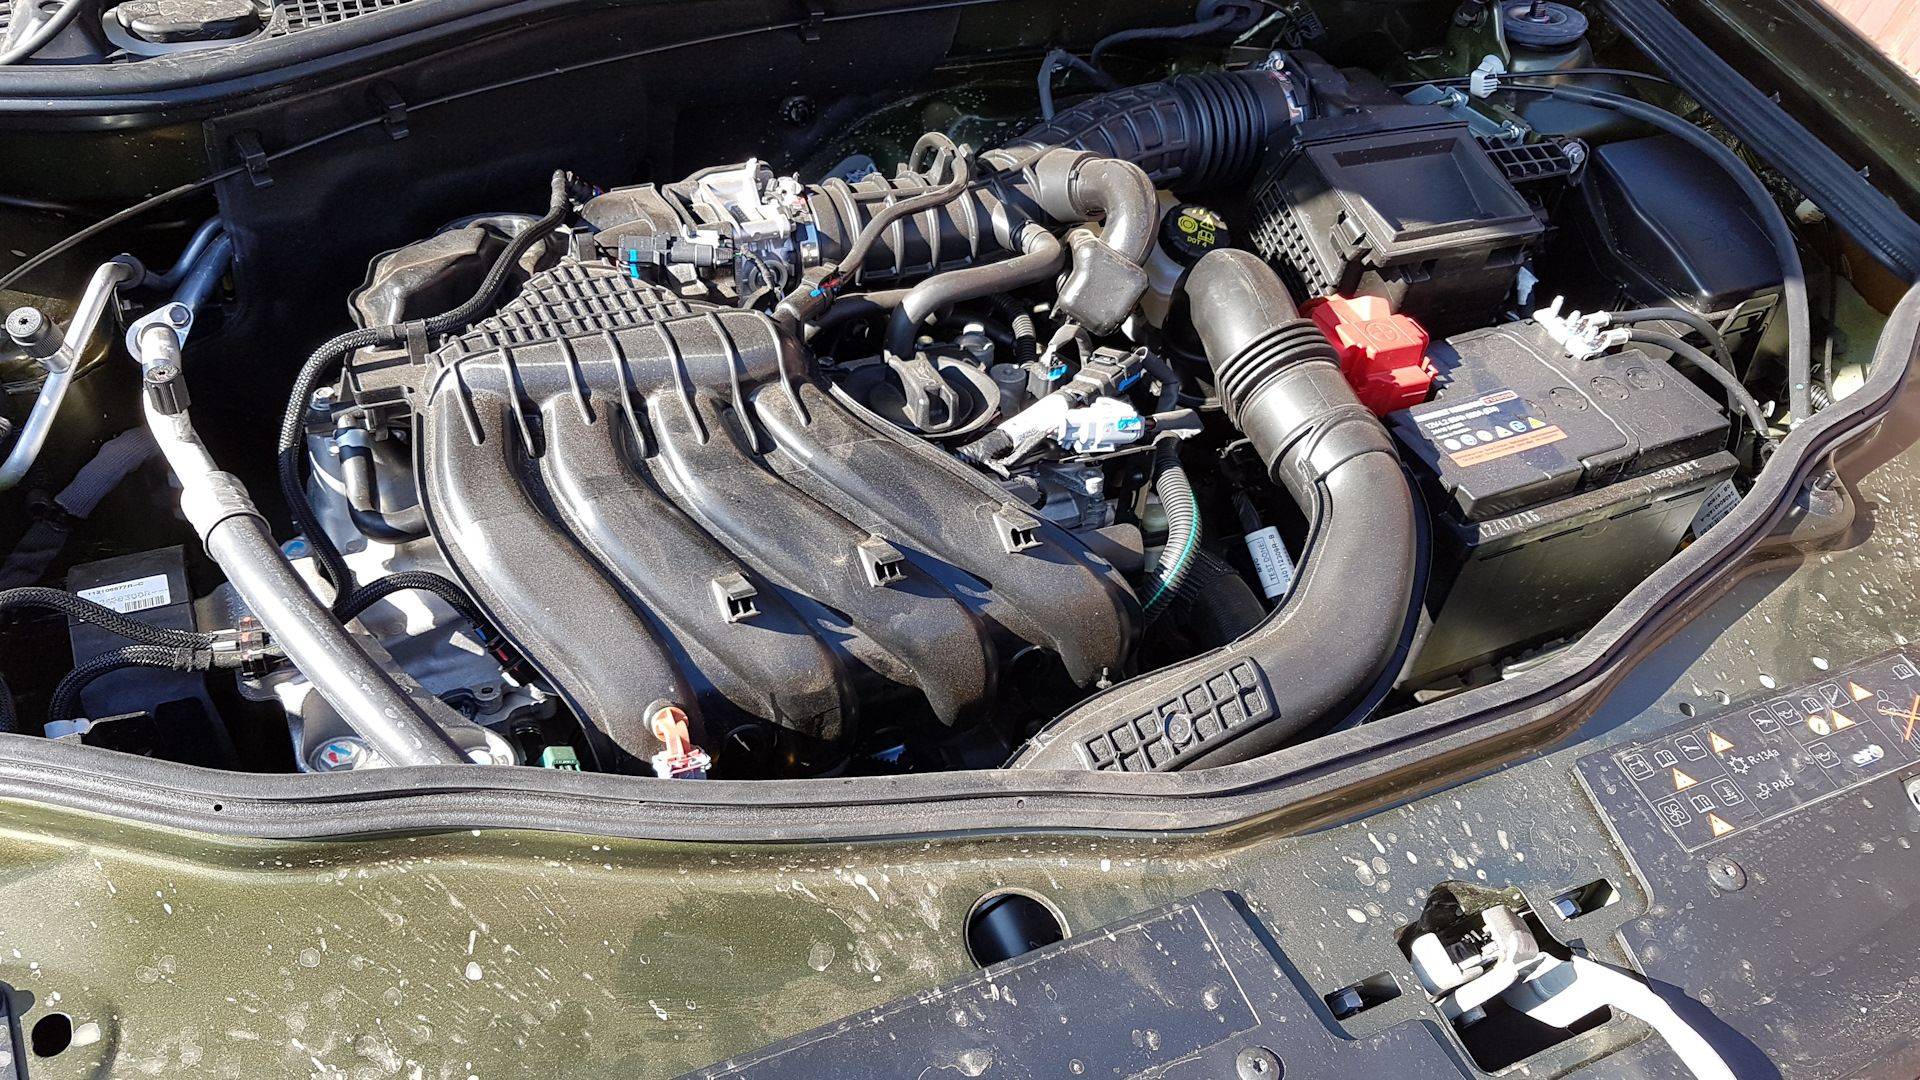 Двигатель renault h4m 1.6 литра - характеристики, ресурс, проблемы, отзывы